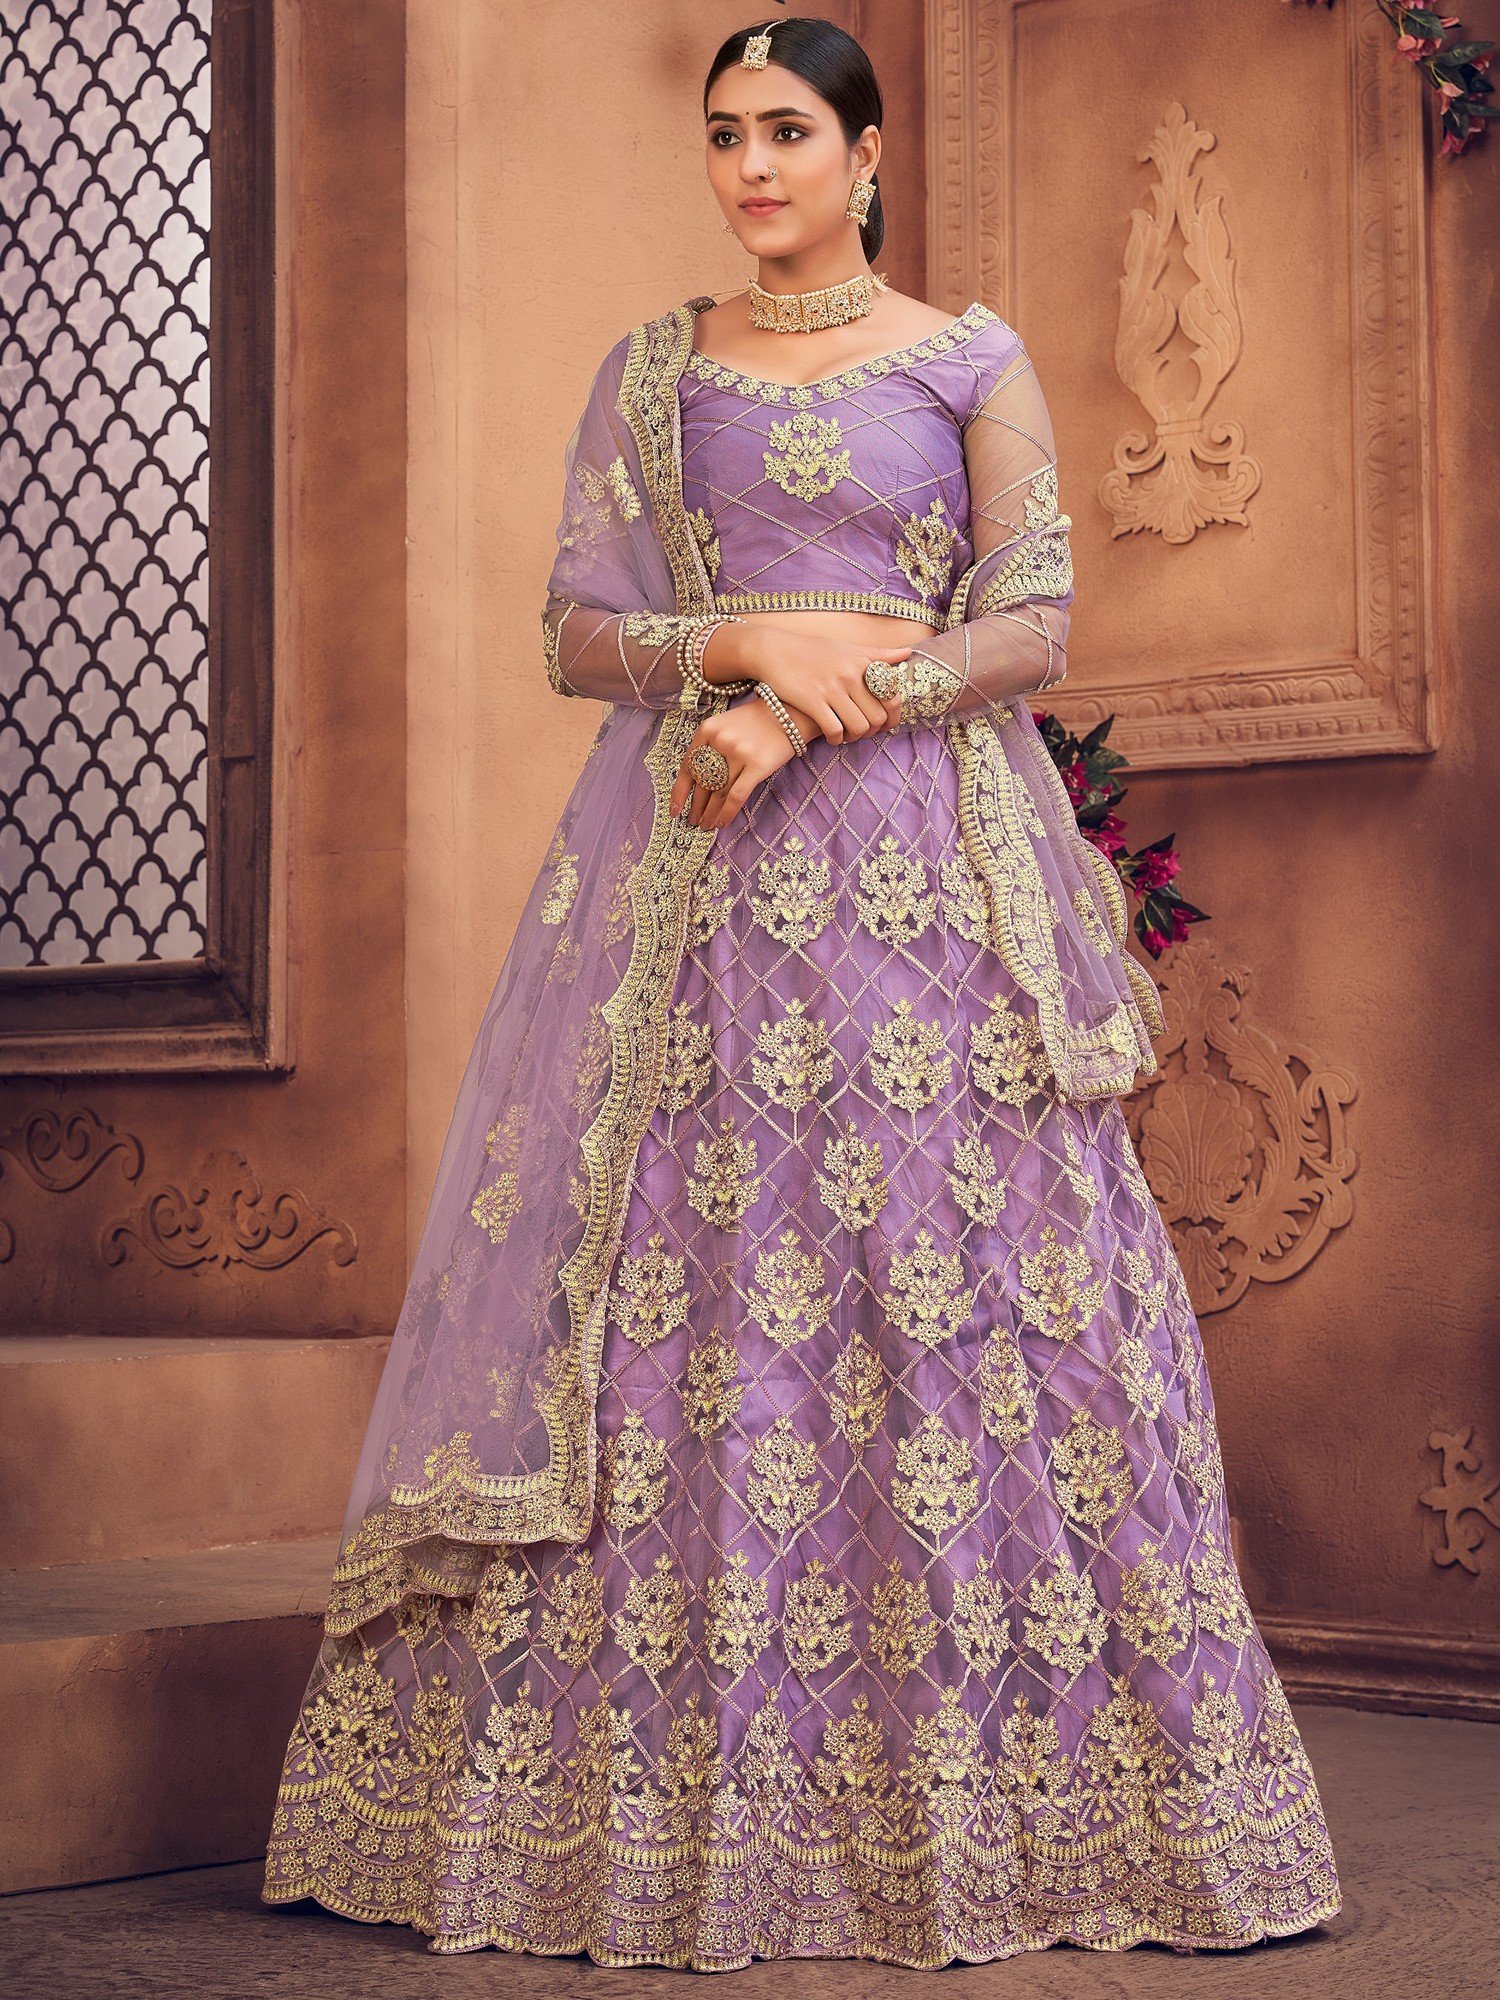 Wedding Wear NET Lehenga 3D Butterfly Pearl Design Indian Pakistani Lengha  Choli | eBay